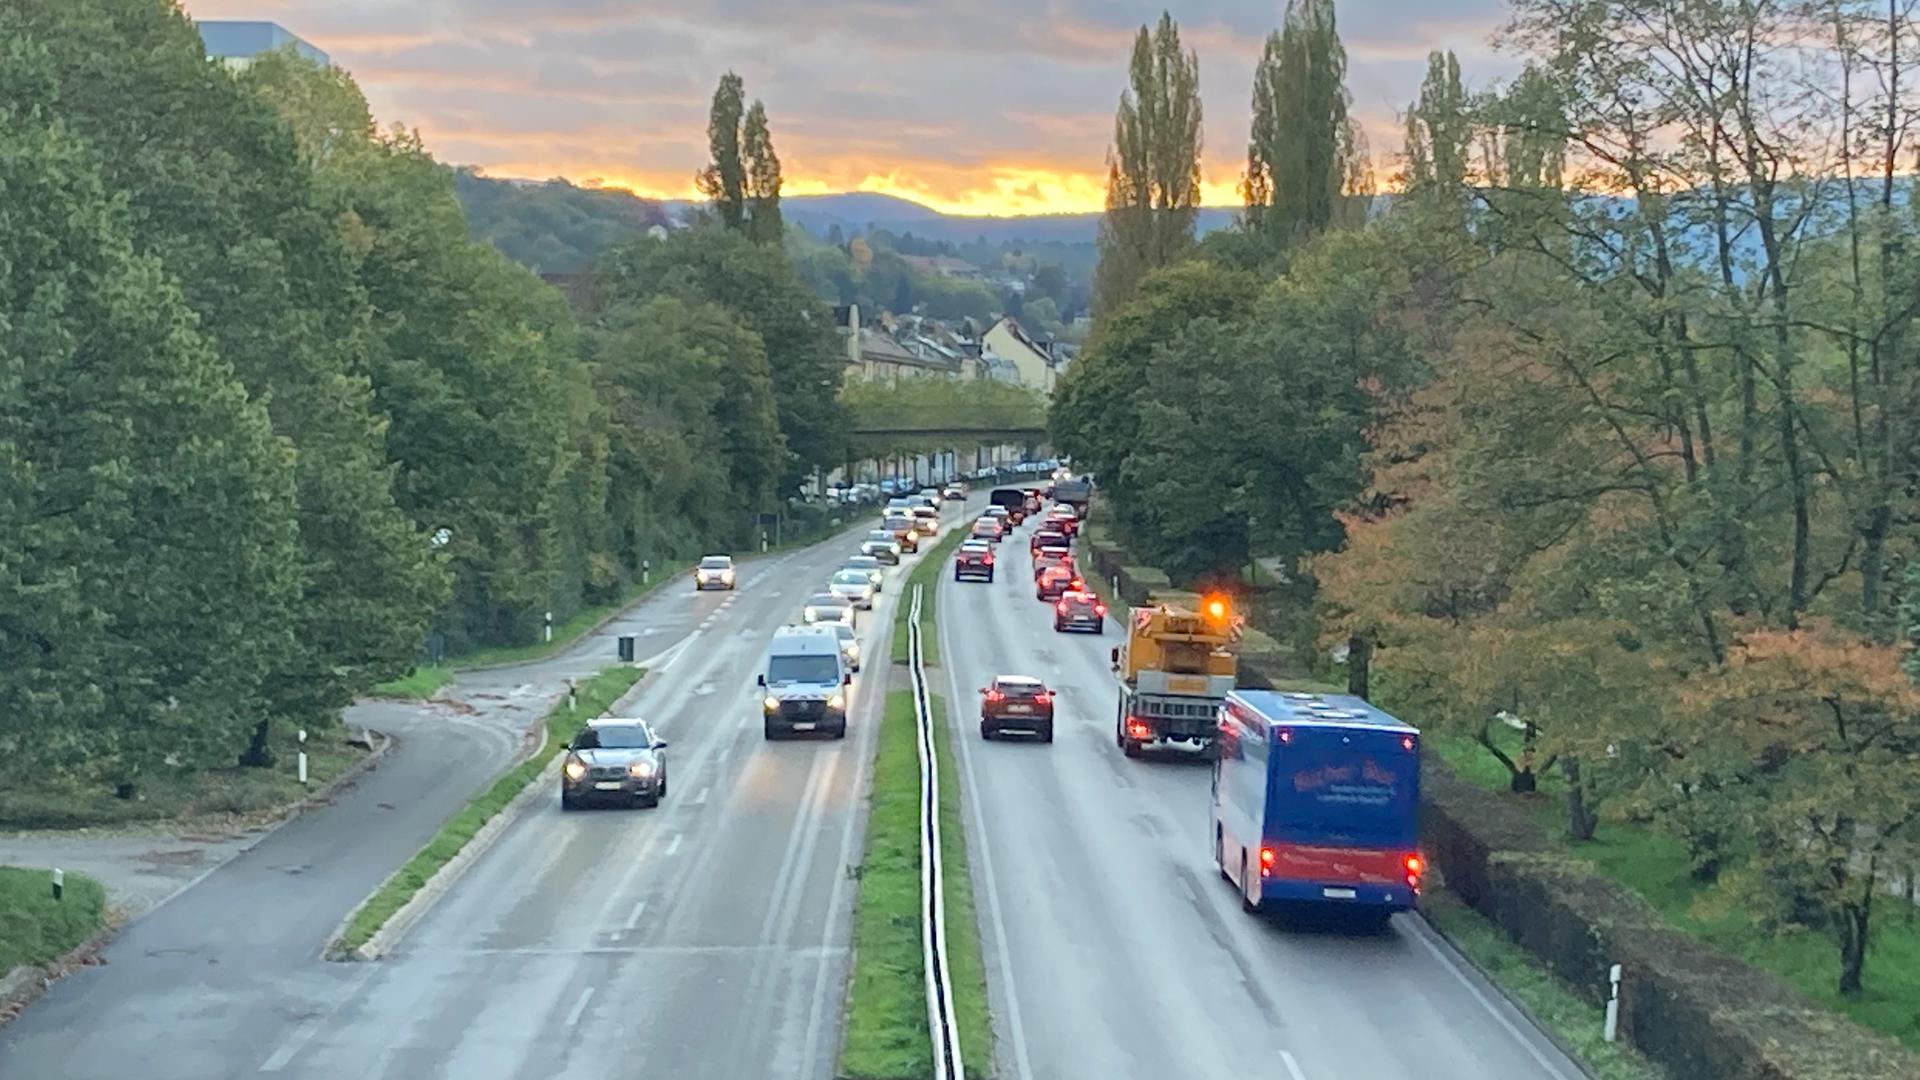 Stau im Berufsverkehr: Nicht nur auf dem Zubringer im morgendlichen Berufsverkehr stockt es häufig in Baden-Baden. Einen Klimamobilitätsplan halten die meisten Stadträte dennoch für überflüssig.